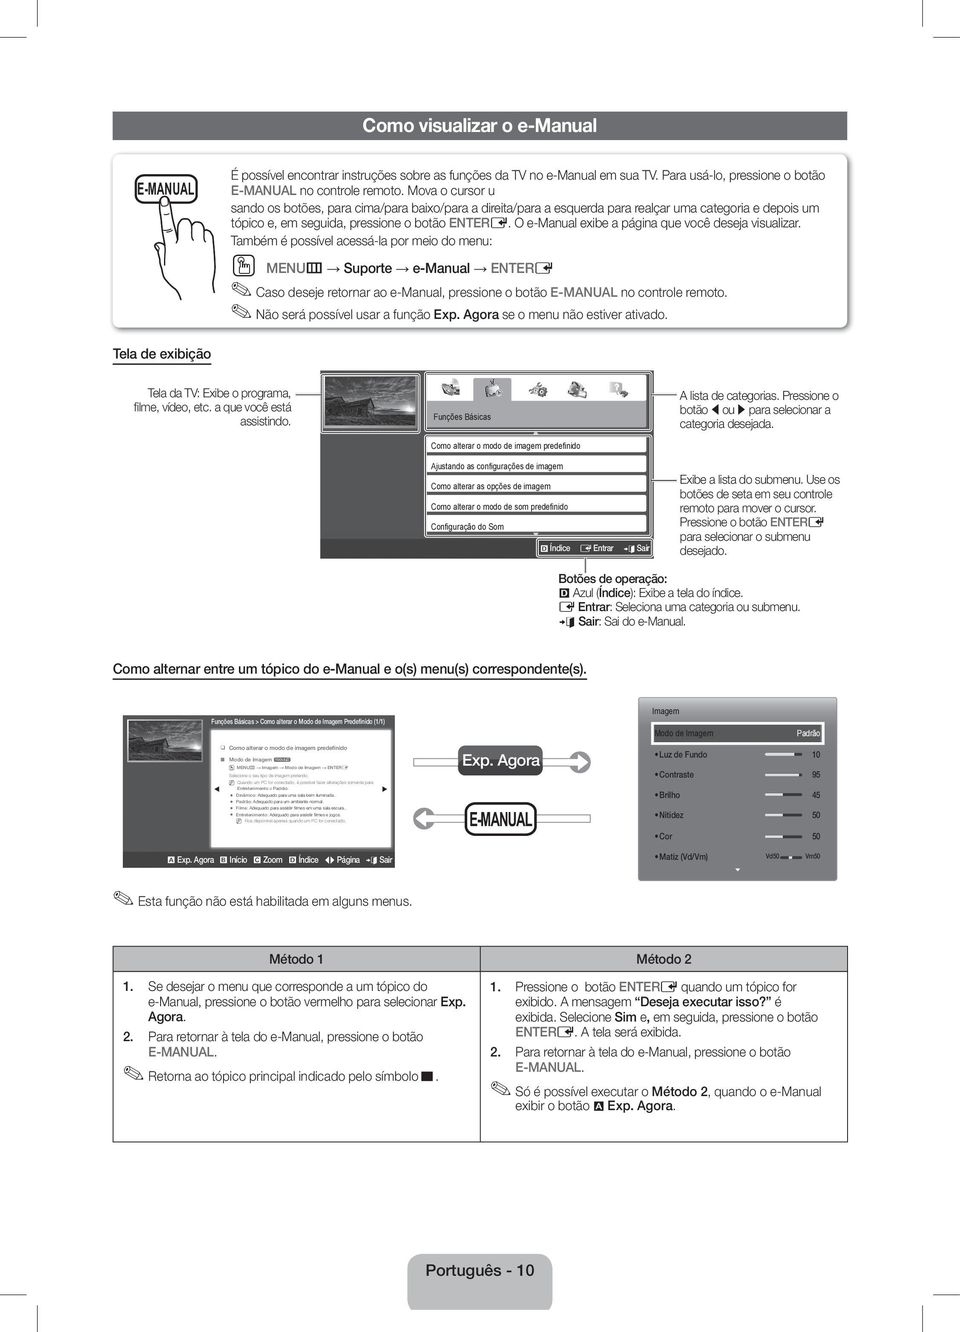 O e-manual exibe a página que você deseja visualizar.